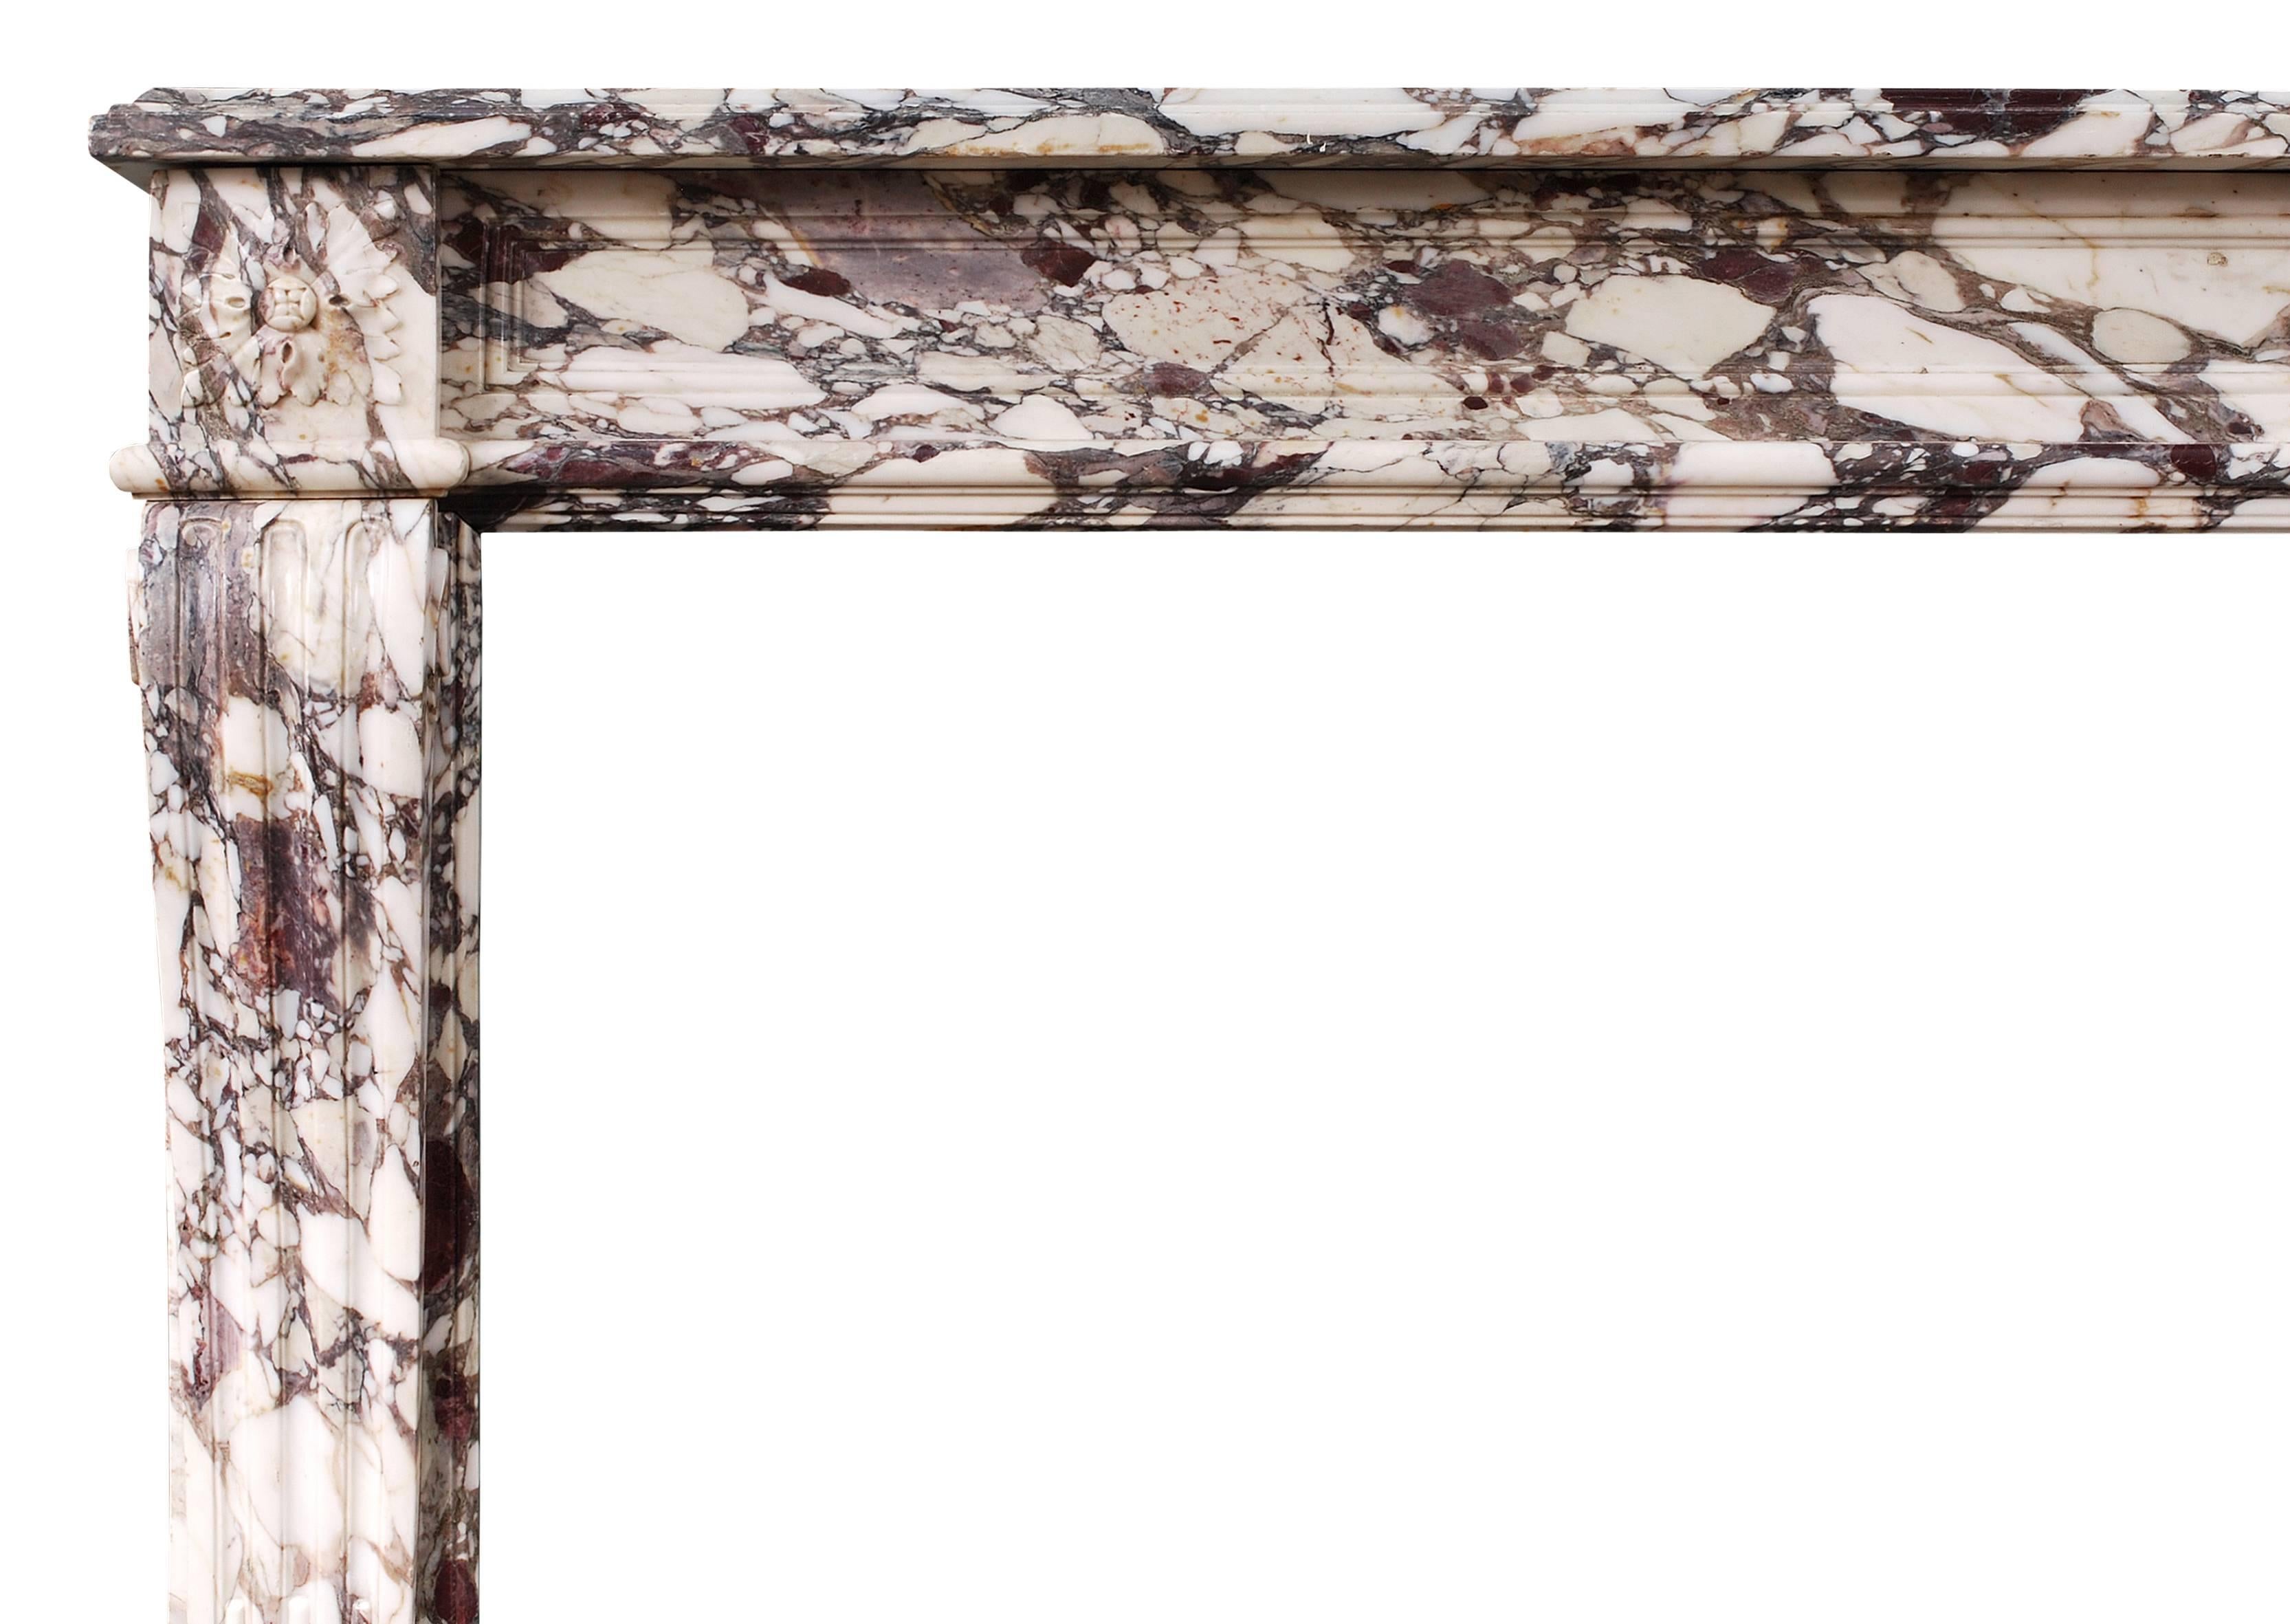 Cheminée française de style Louis XVI du milieu du XIXe siècle en marbre Brèche Violette. Les montants profilés et cannelés sont surmontés de patères carrées sculptées, d'une frise de panneaux et d'une tablette moulurée, vers 1840. Marbre très